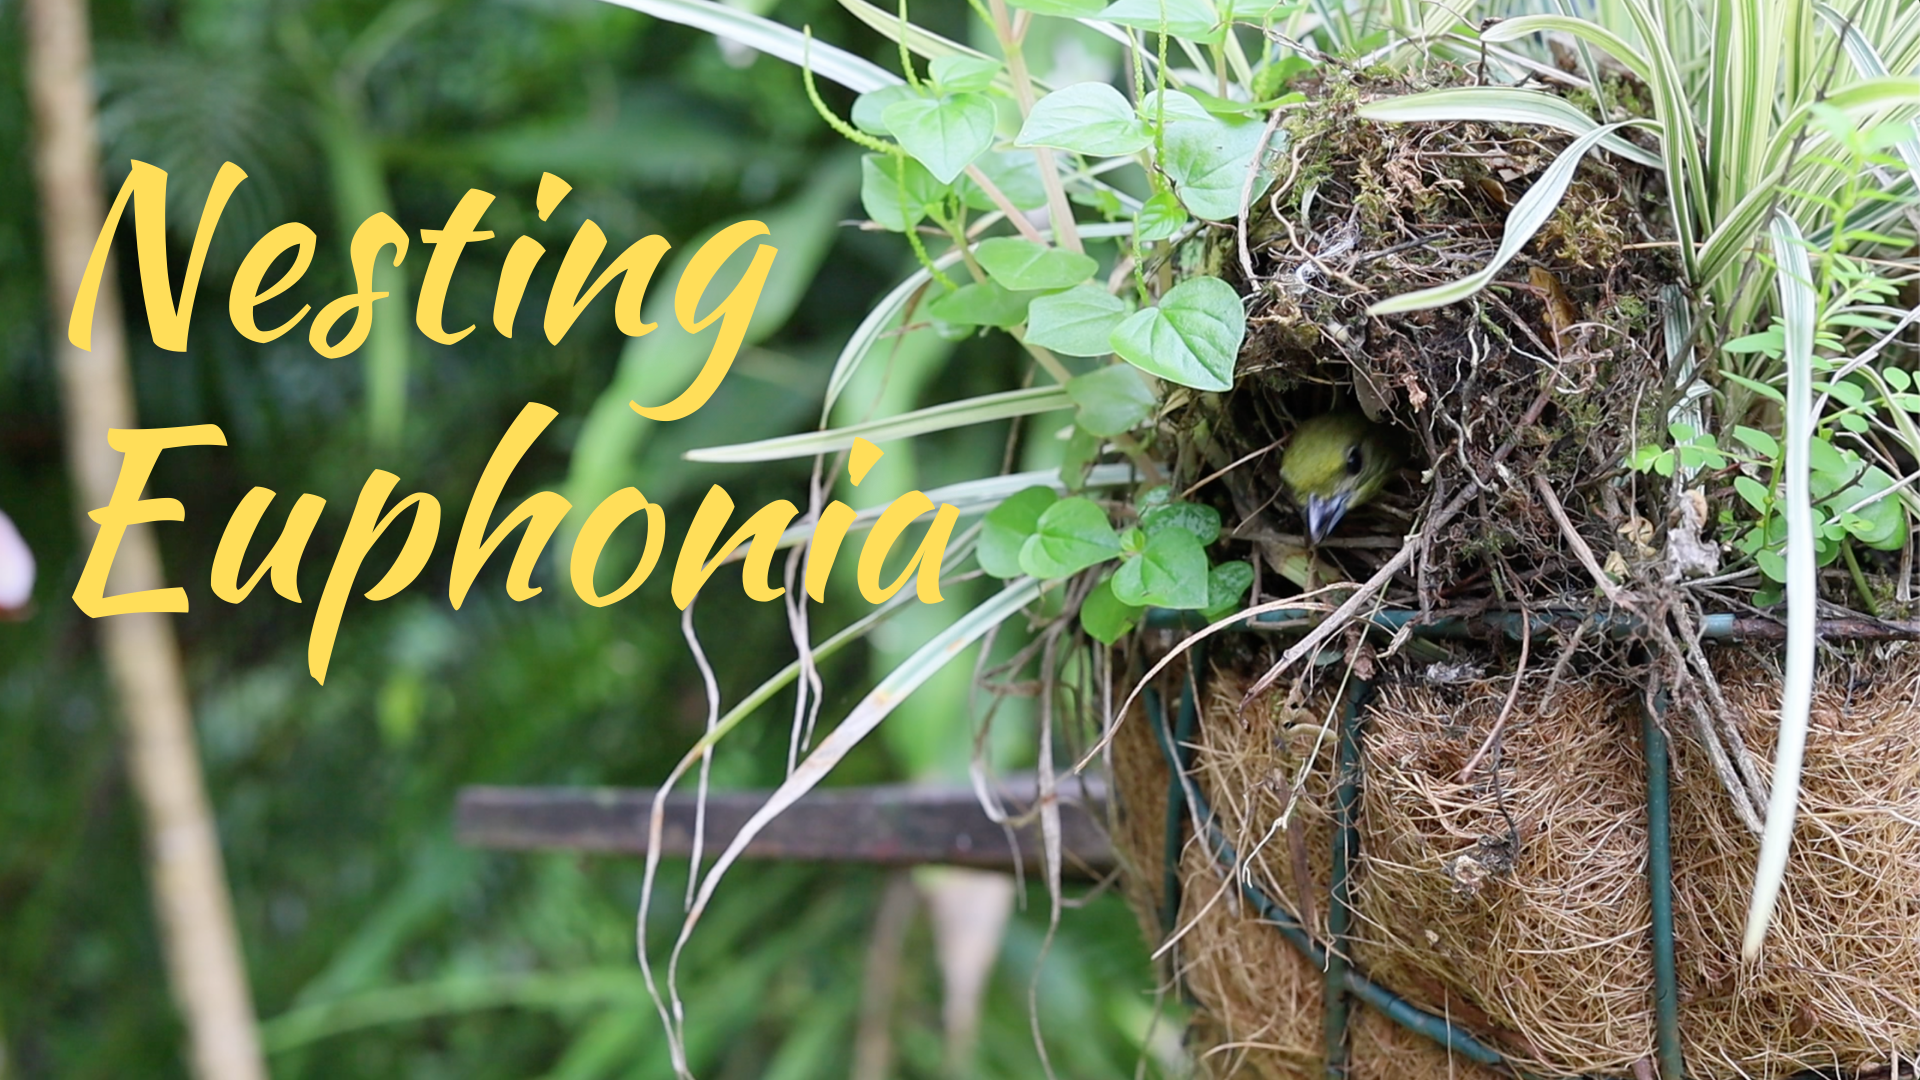 Nesting Euphonia Video